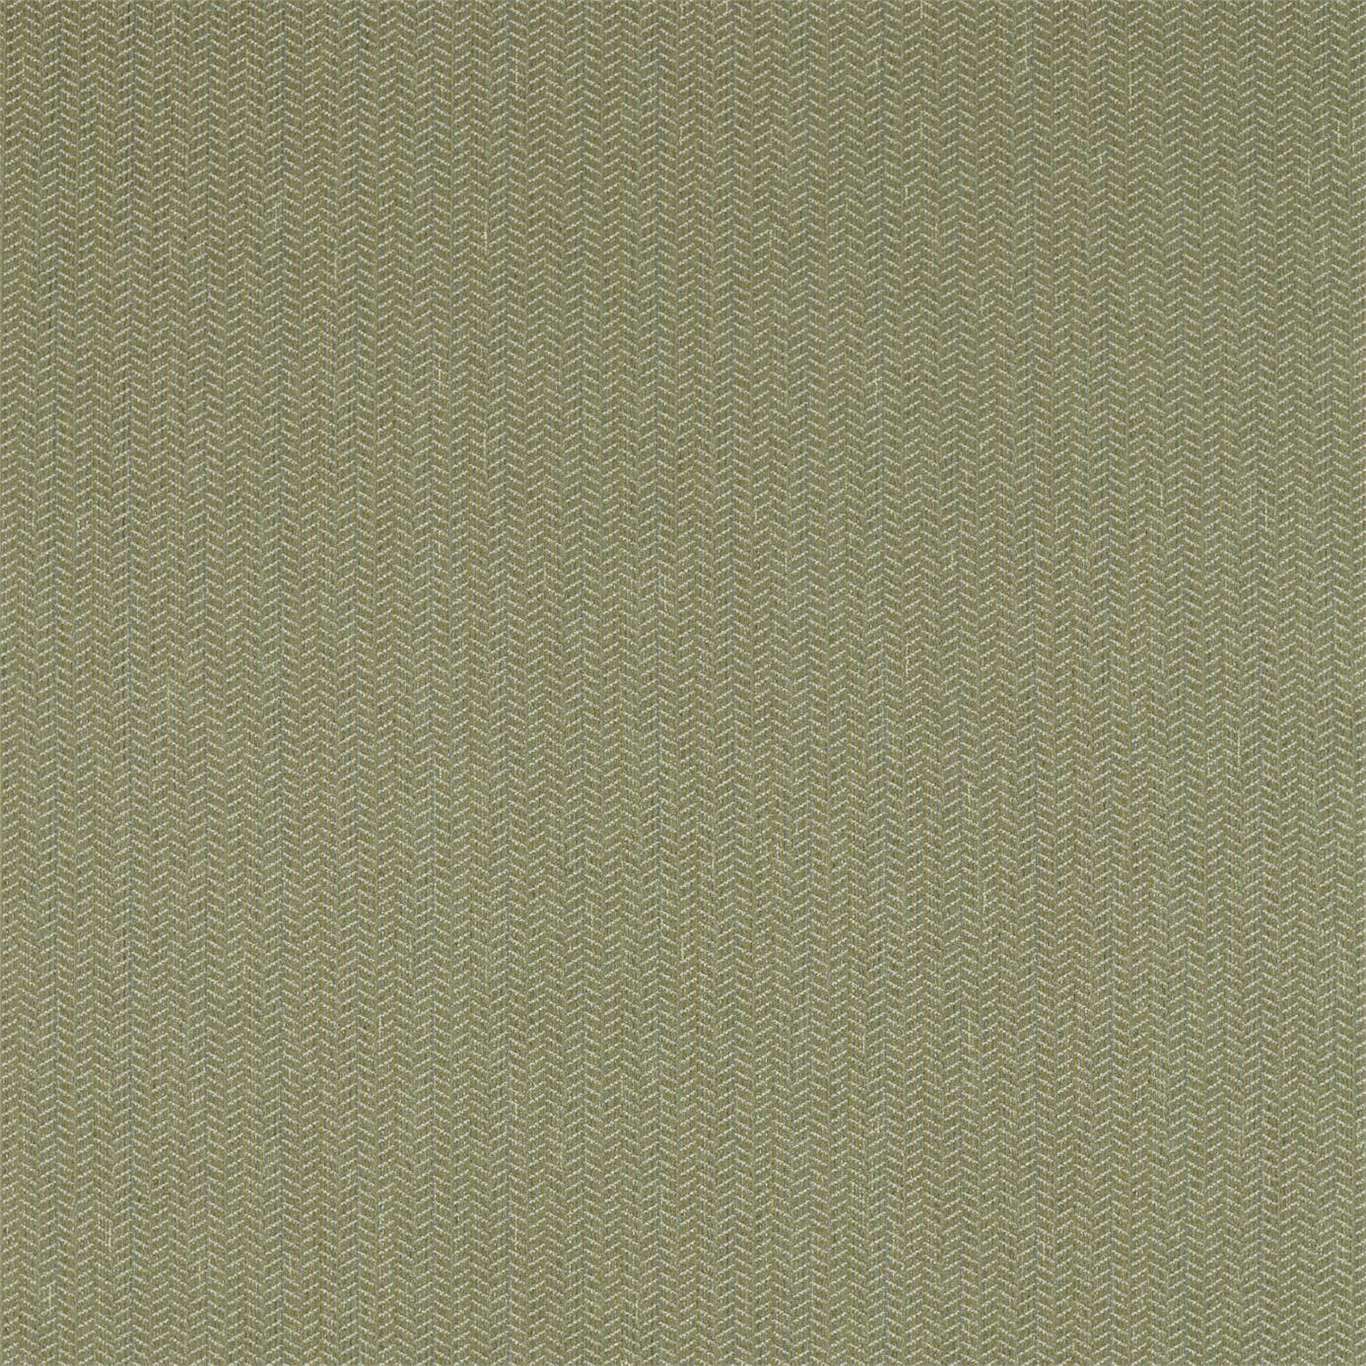 Dune Fabric by Sanderson - DEBW236577 - Lichen